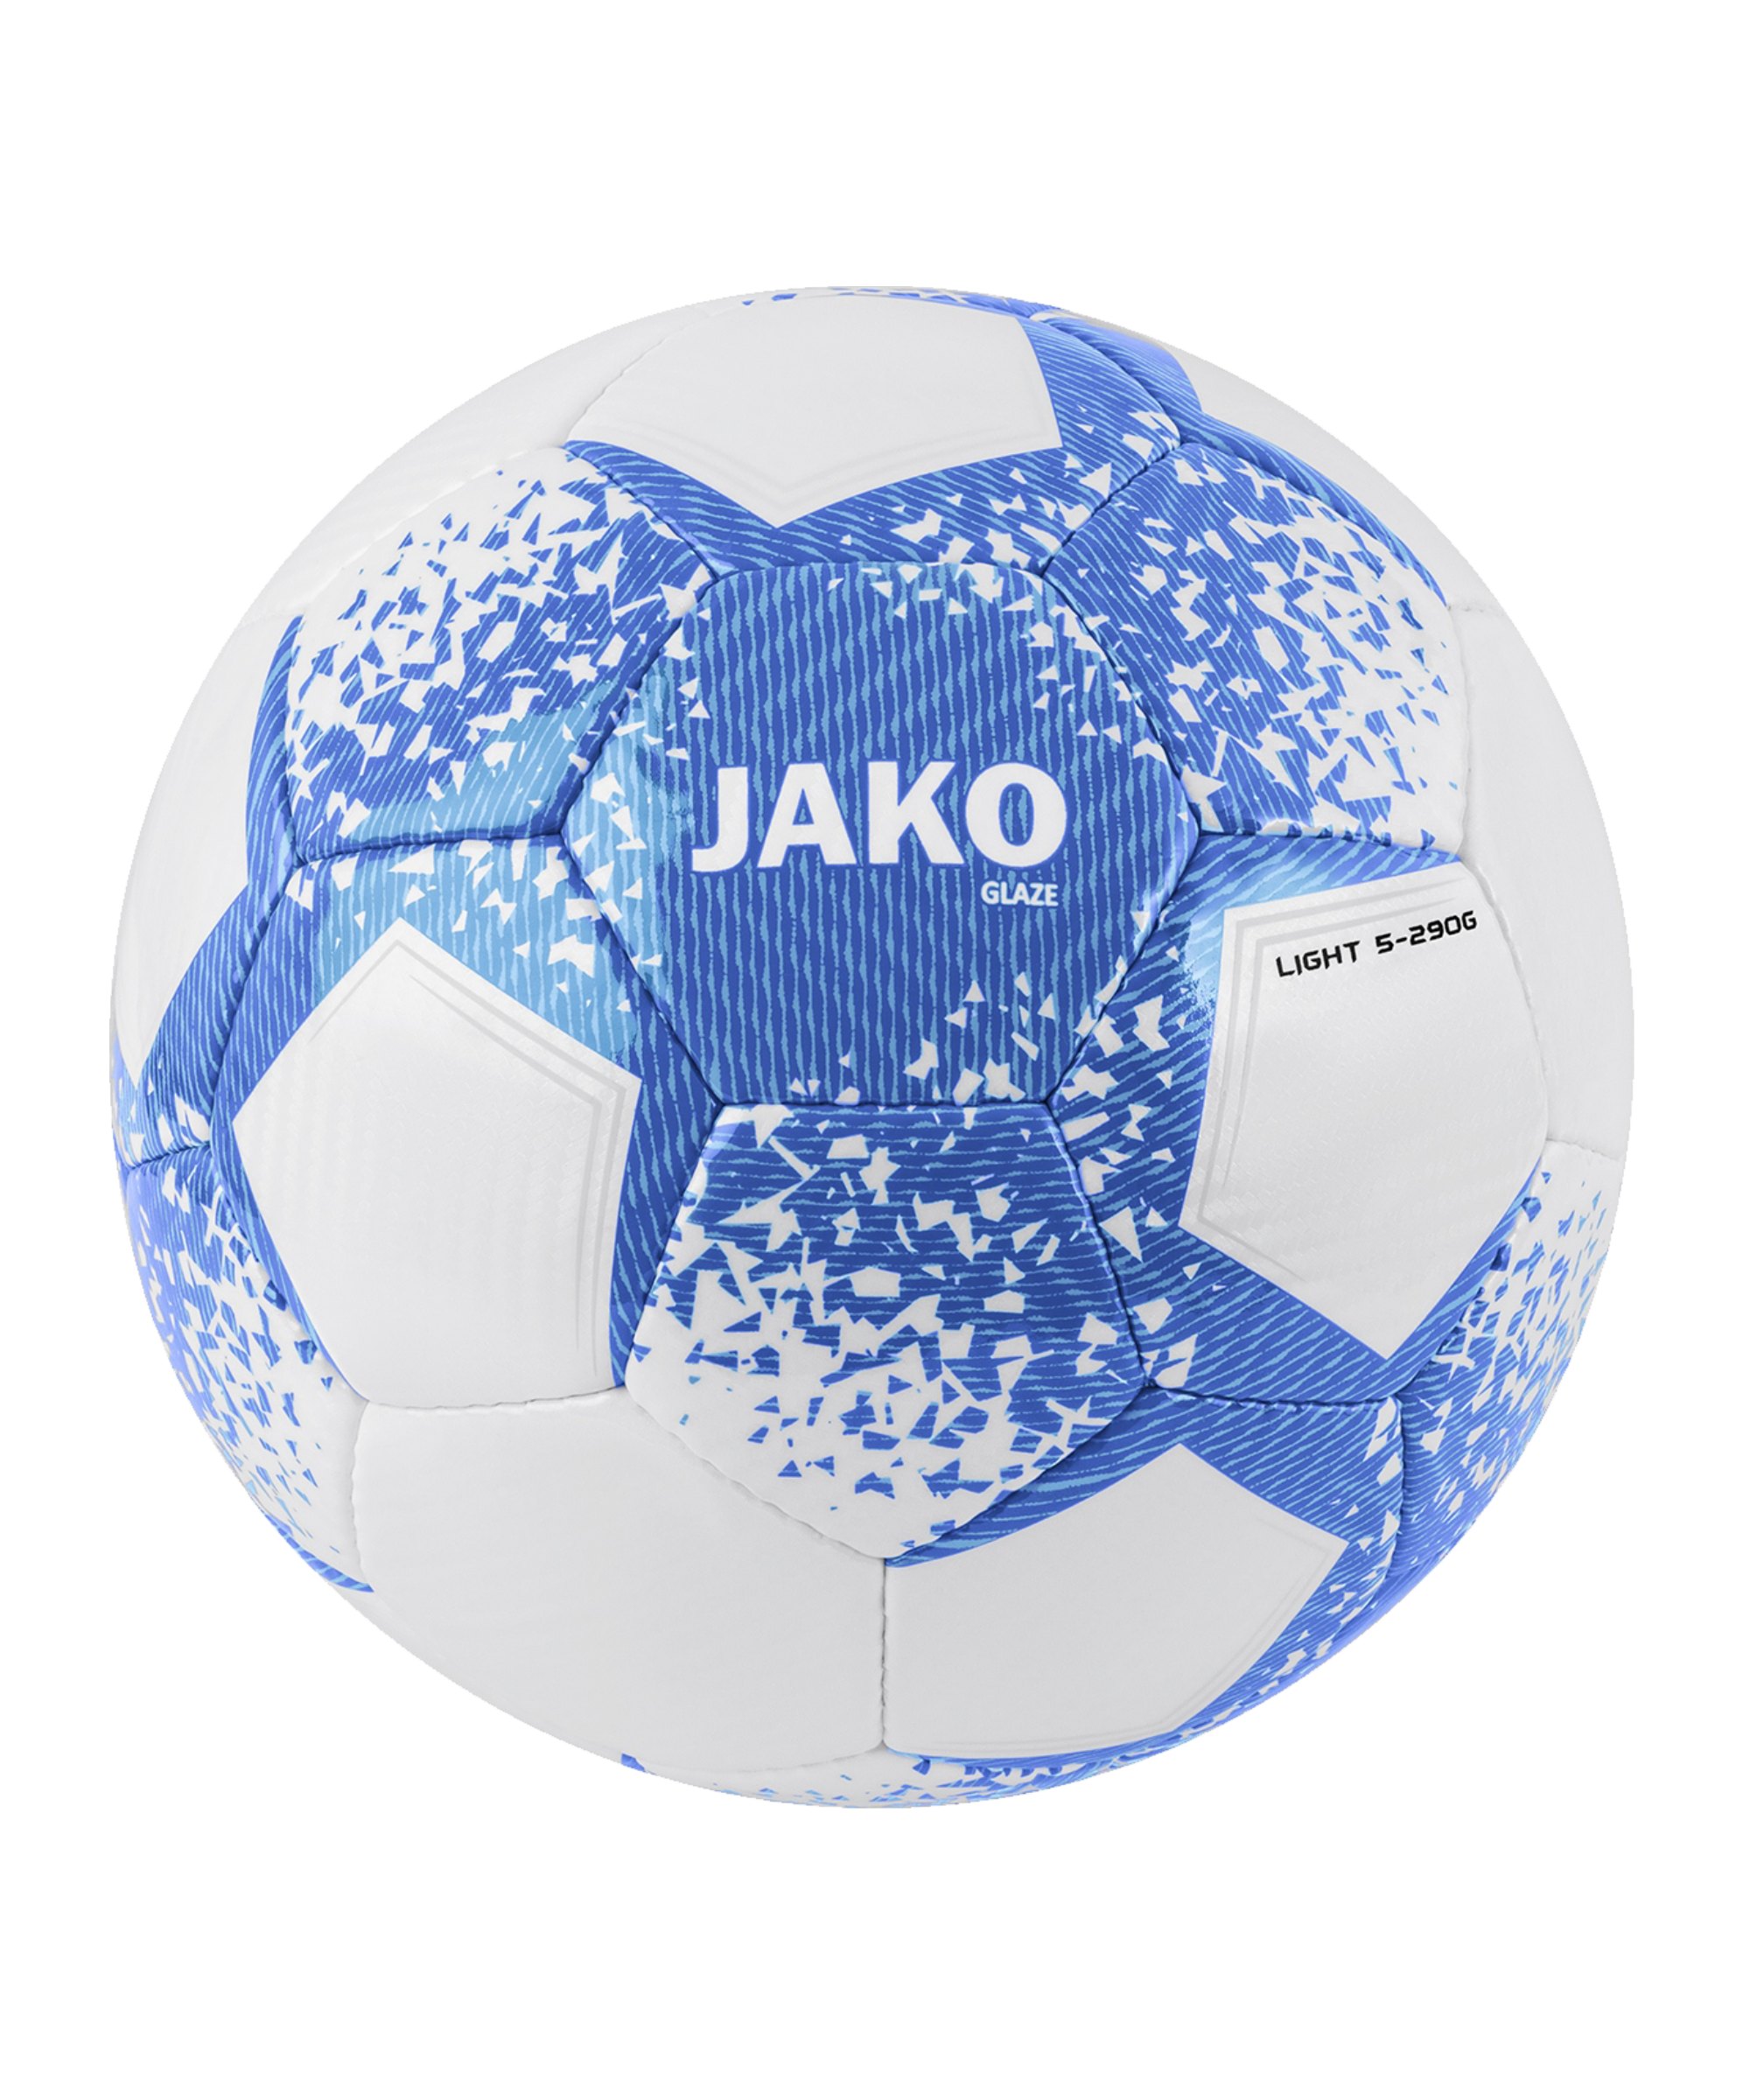 JAKO Glaze Lightball 290g Weiss Blau F703 - weiss